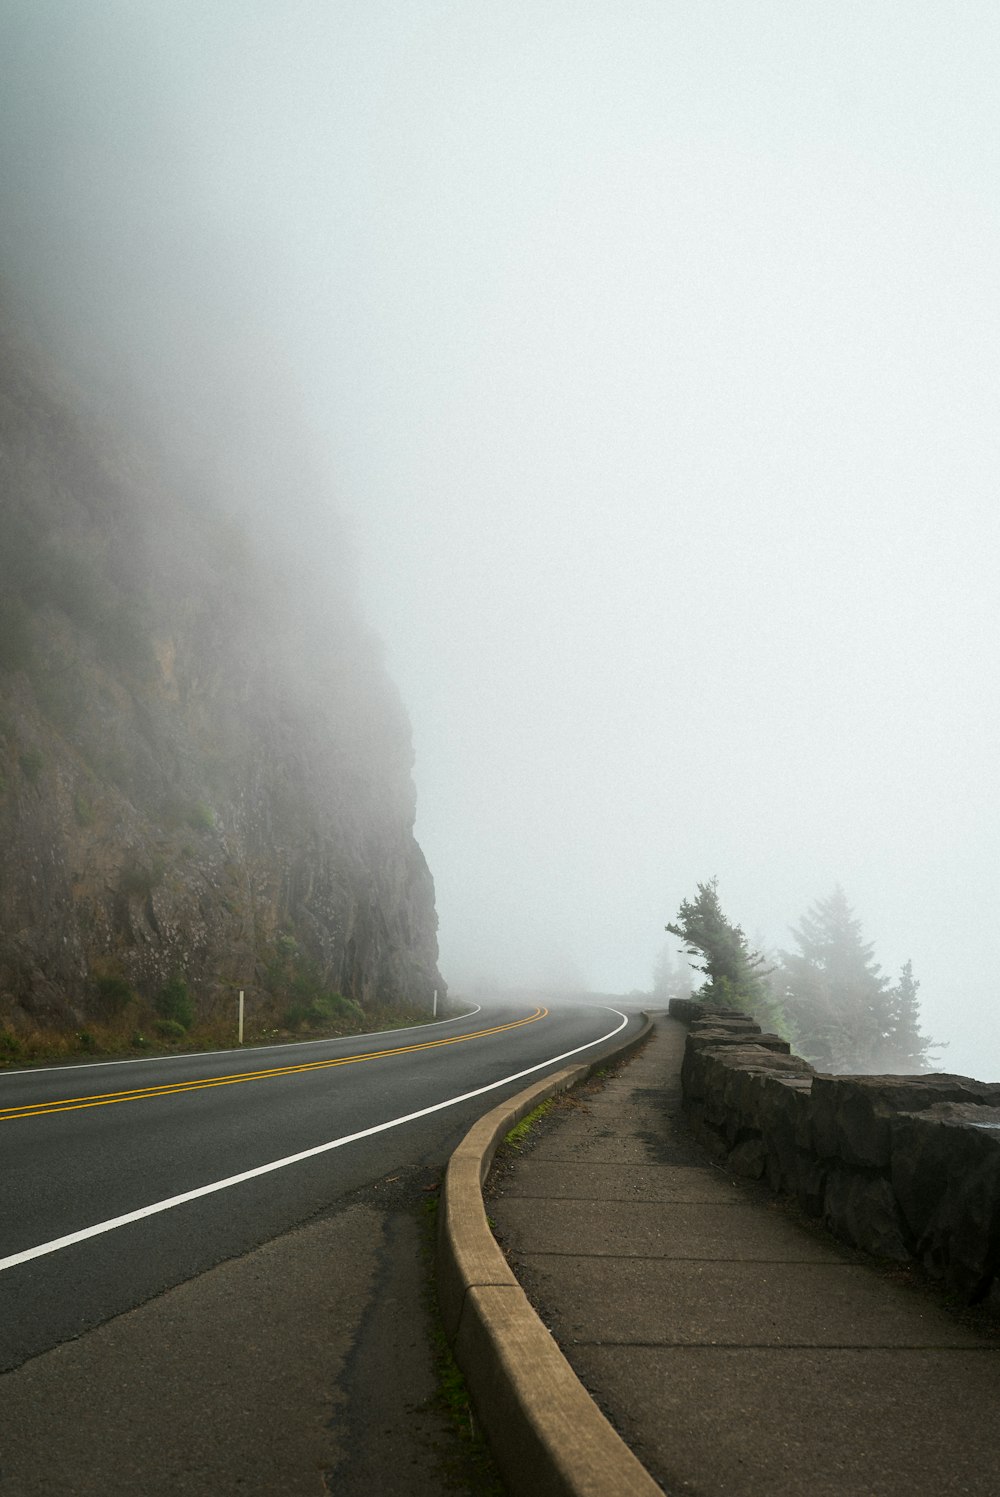 camino de concreto gris entre árboles cubiertos de niebla